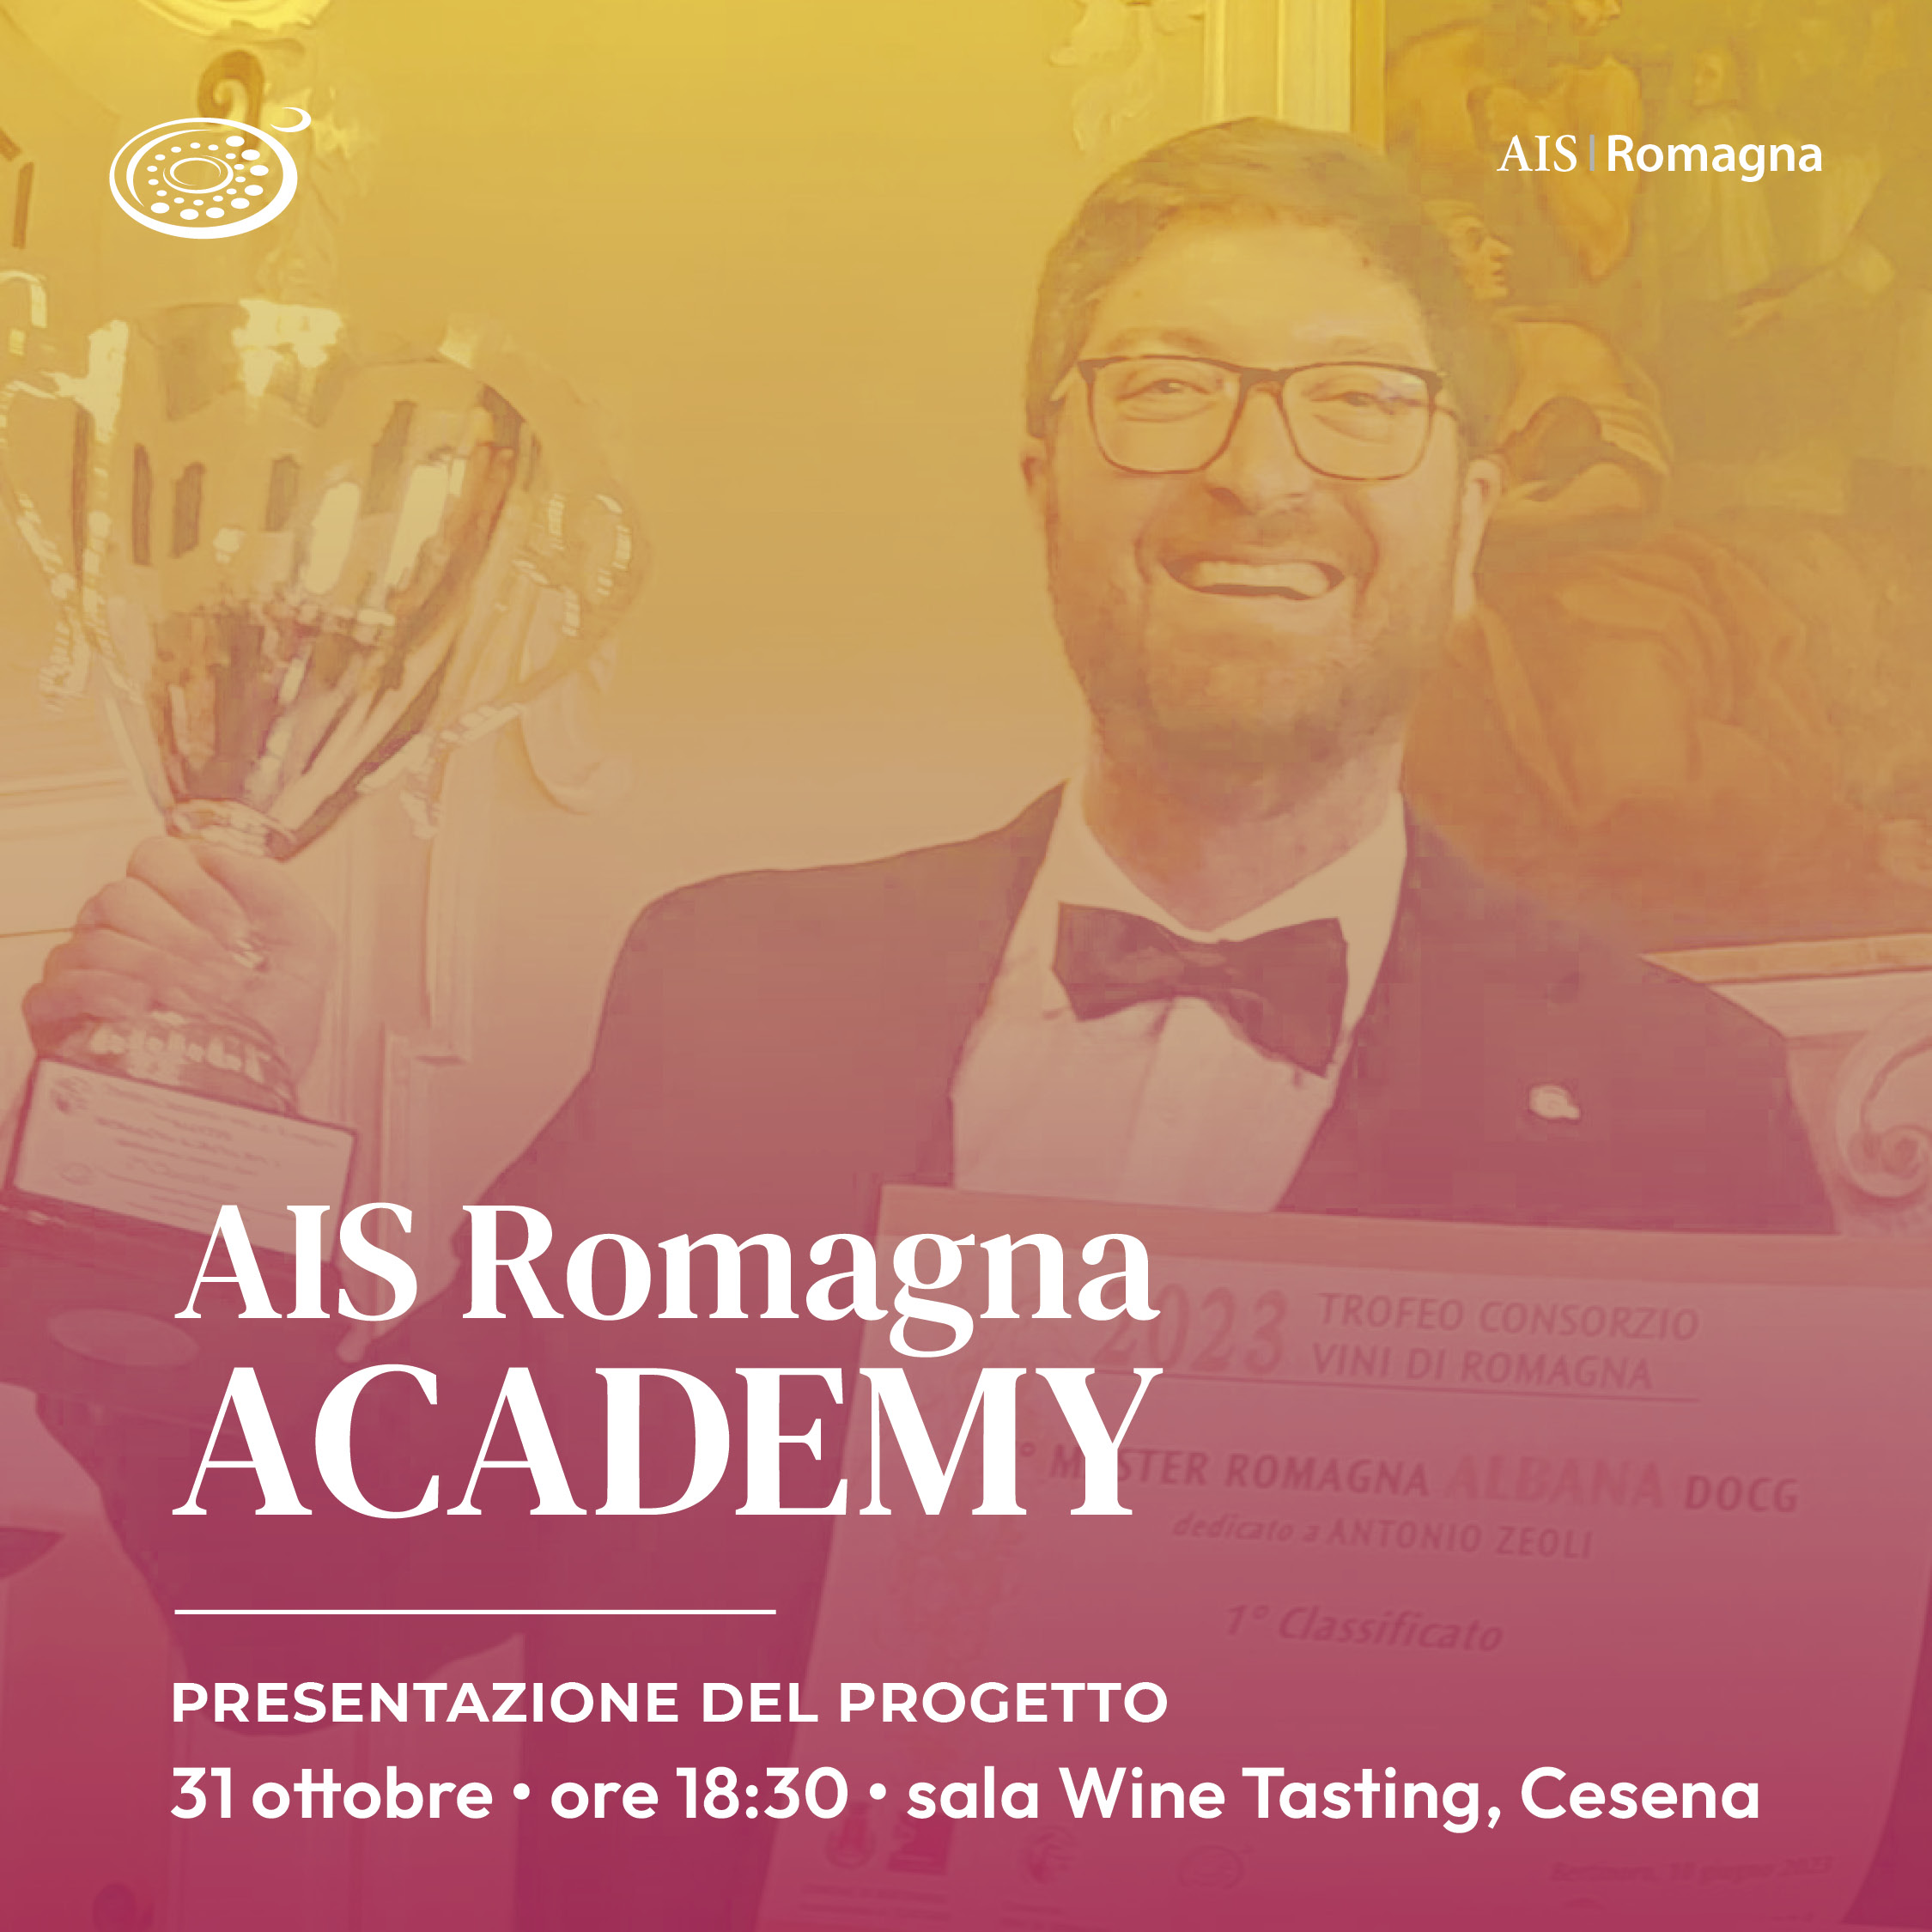 AIS Romagna Academy